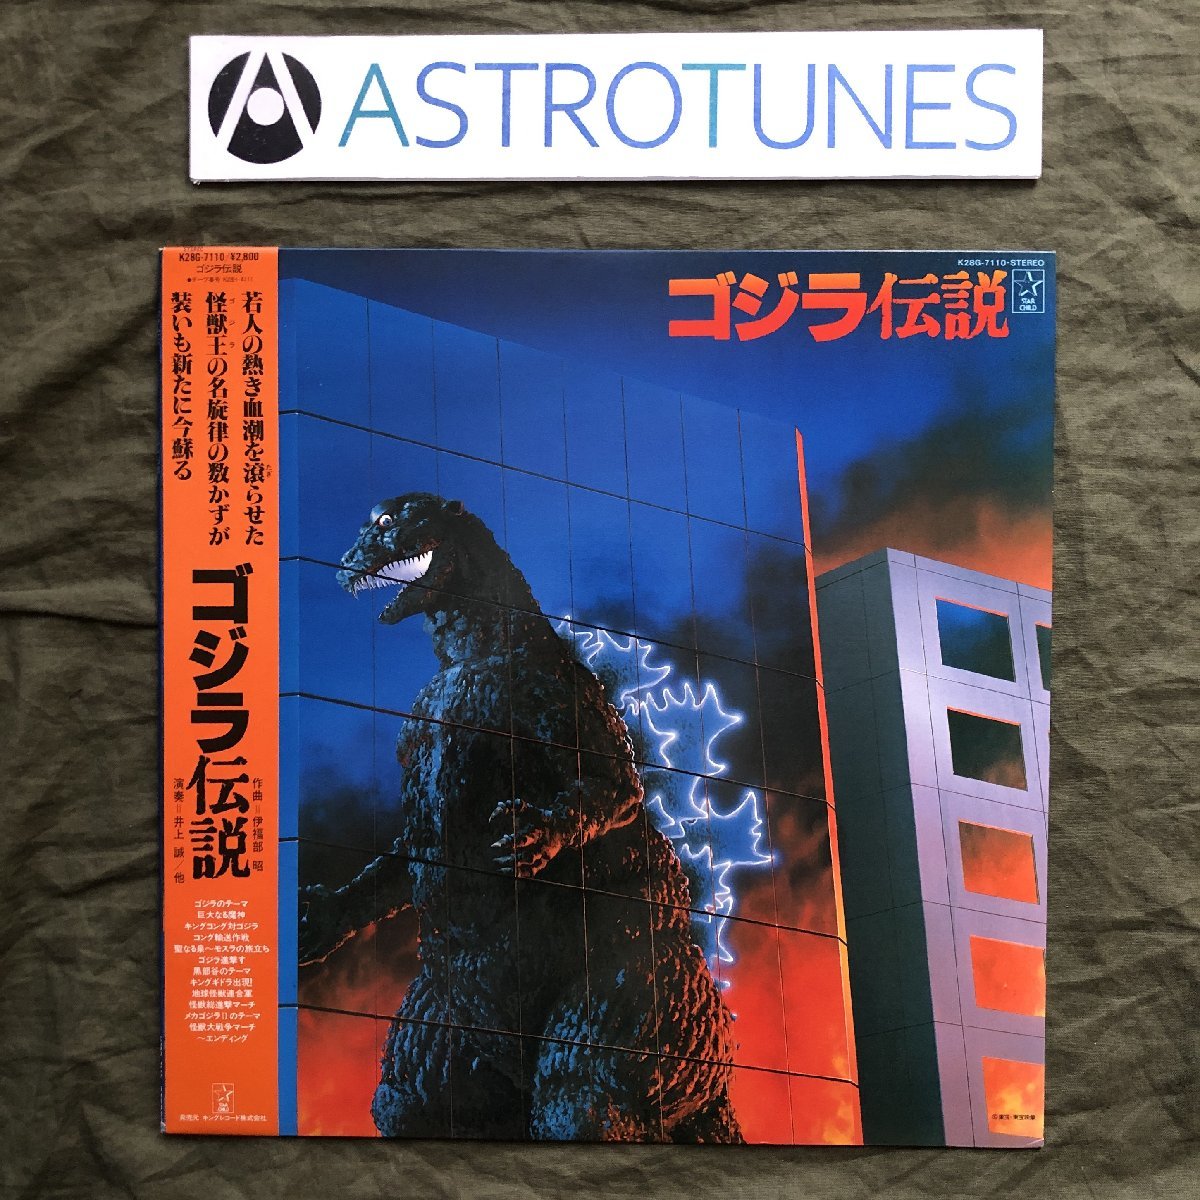  scratch none beautiful record beautiful jacket beautiful goods 1983 year LP record Godzilla legend Godzilla Densetsu with belt movie Inoue .. luck part . Mothra King Giddra poster attaching 